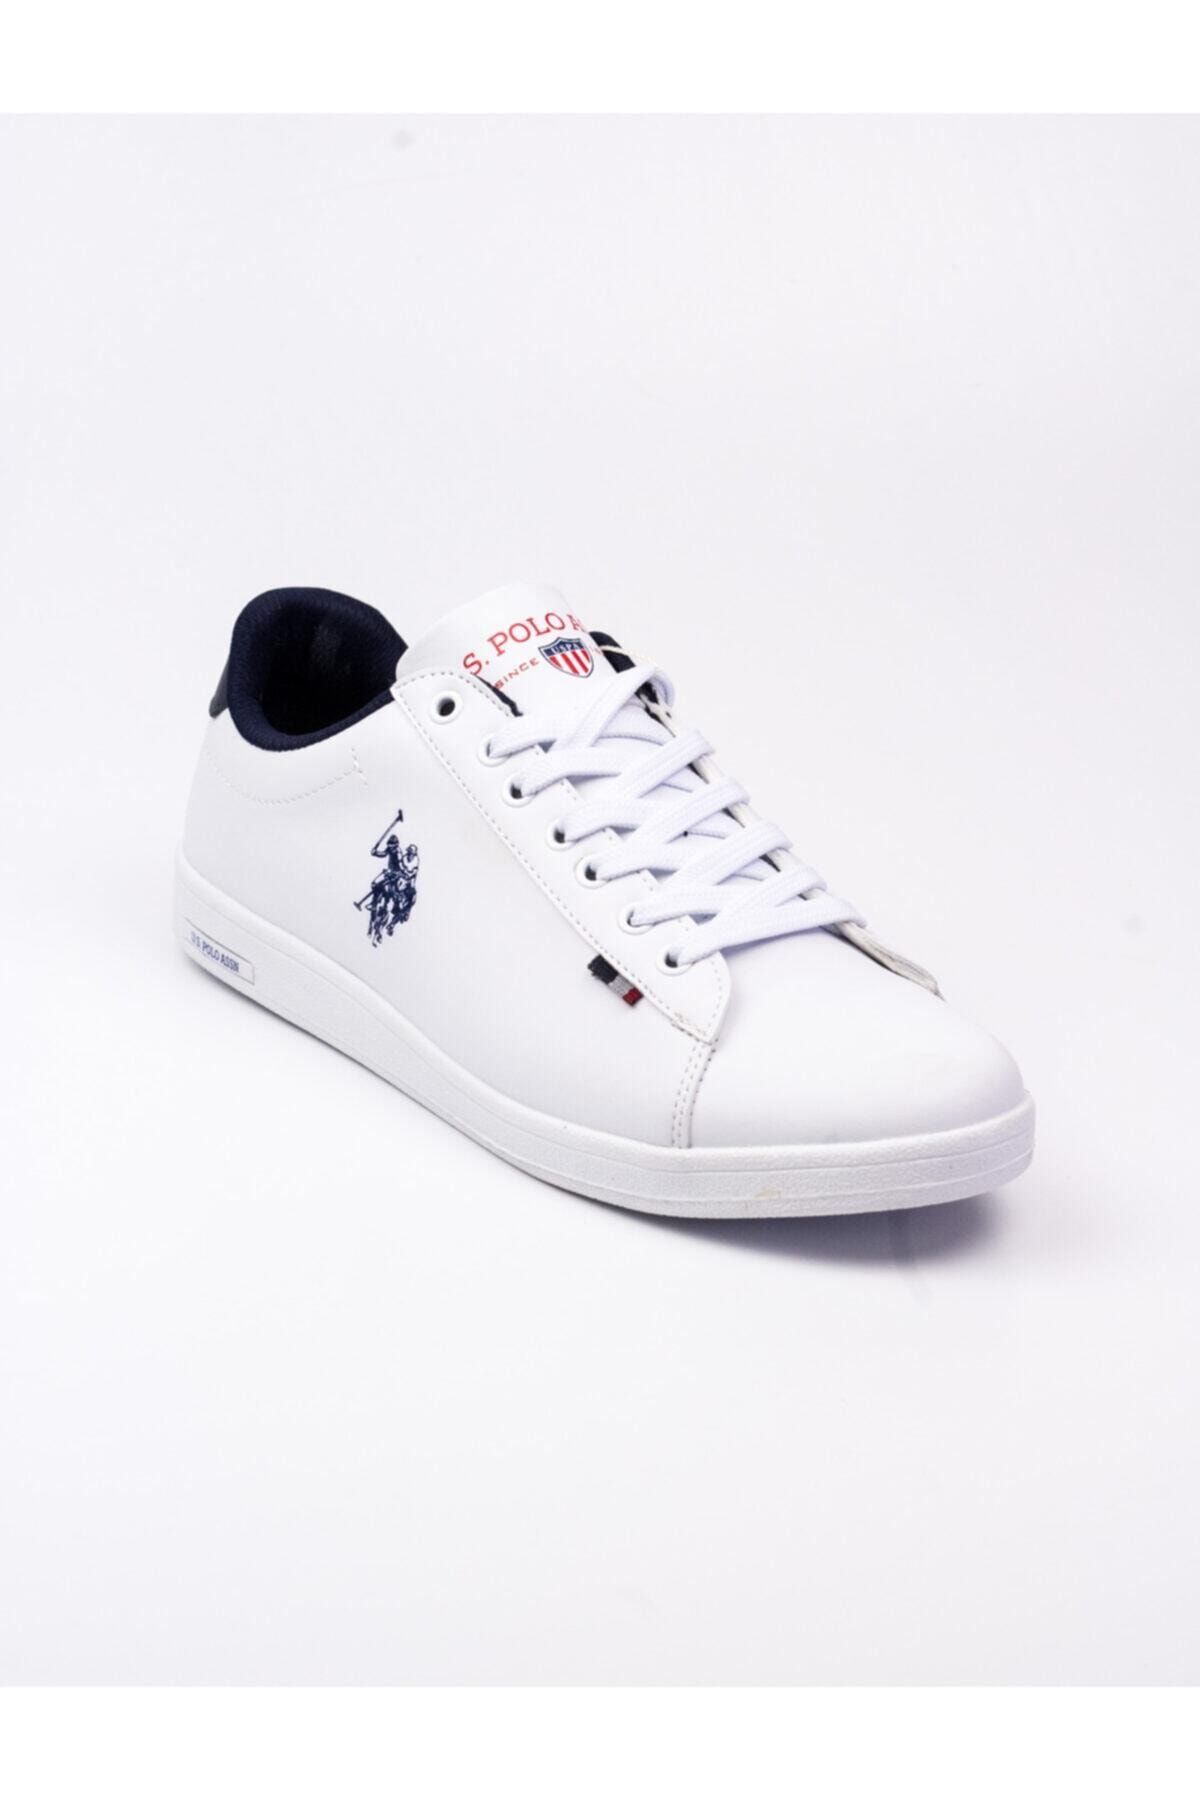 U.S. Polo Assn. FRANCO DHM Beyaz Erkek Sneaker Ayakkabı 100548978